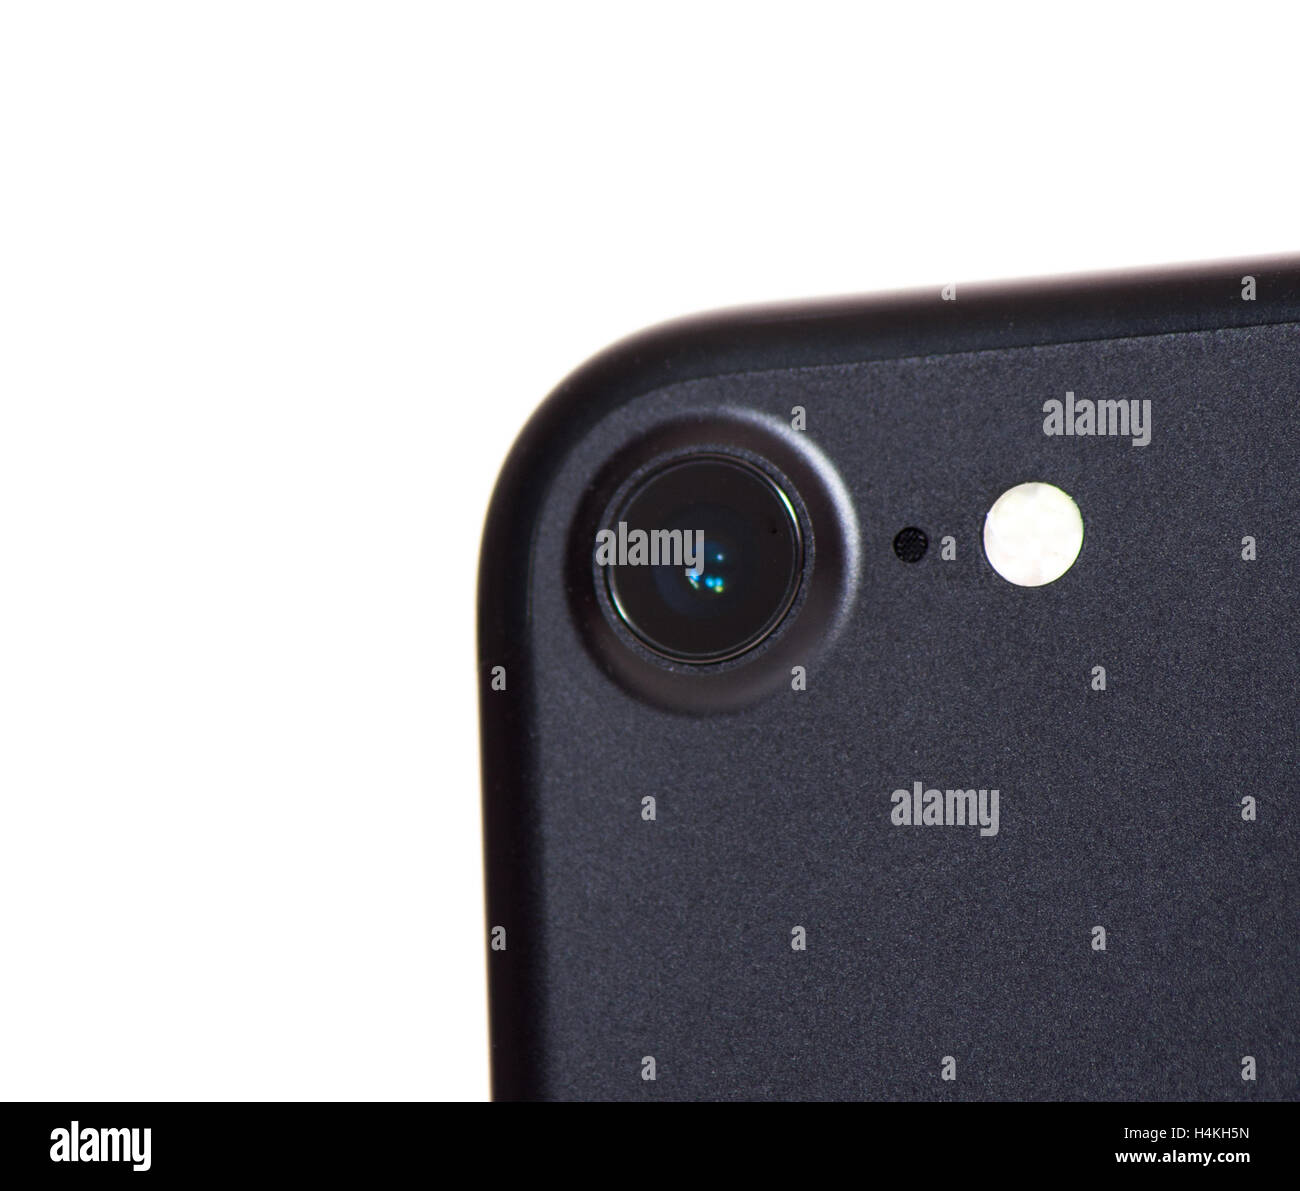 Dettaglio colpo di Apple iPhone 7 fotocamera posteriore. Tutto su sfondo bianco. Foto Stock